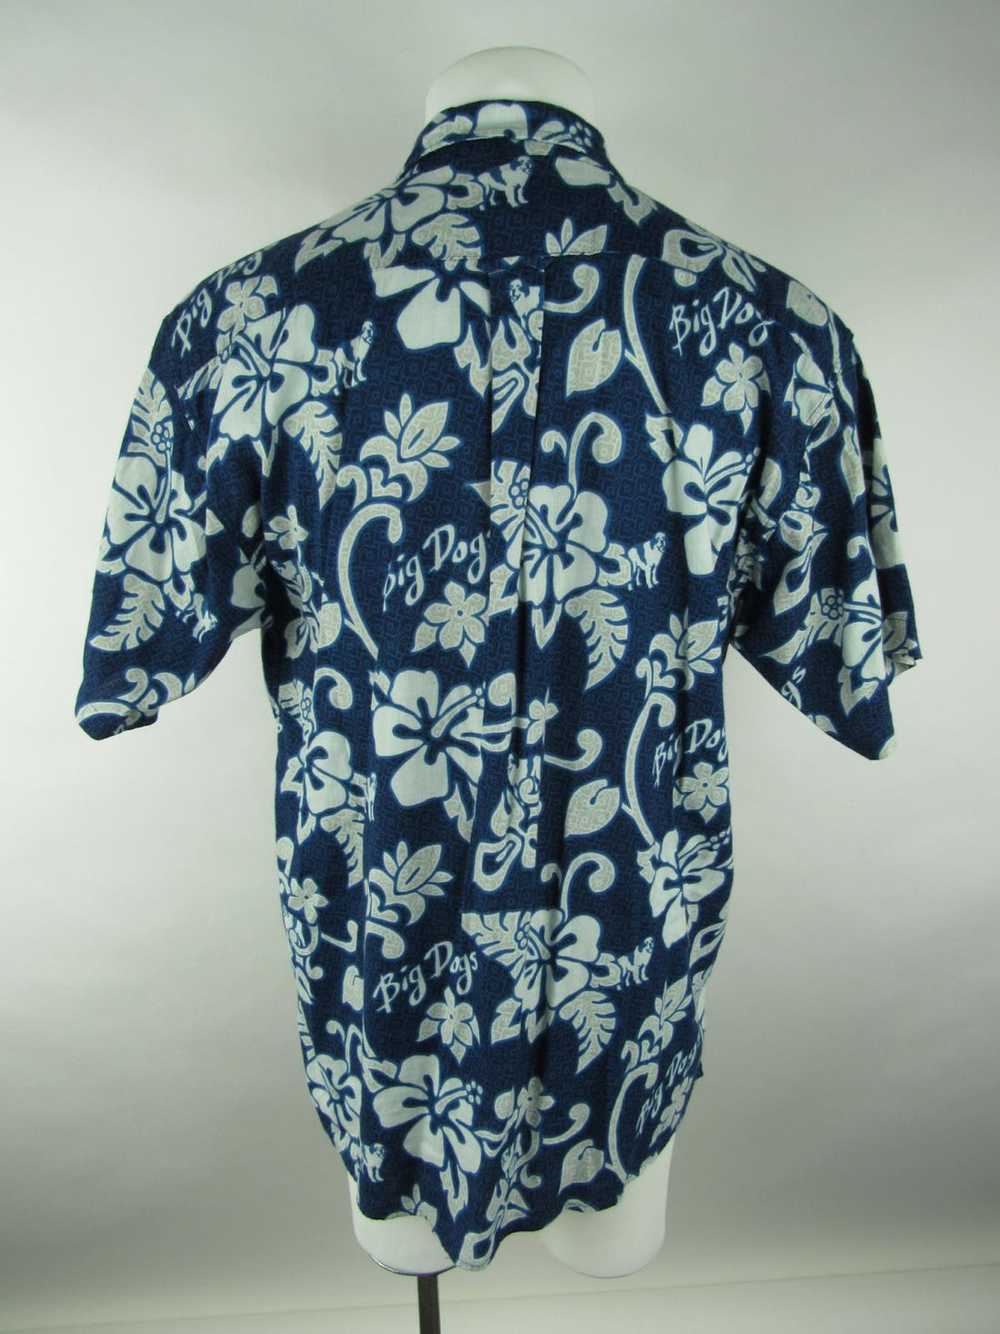 Big Dogs Hawaiian Shirt - image 2